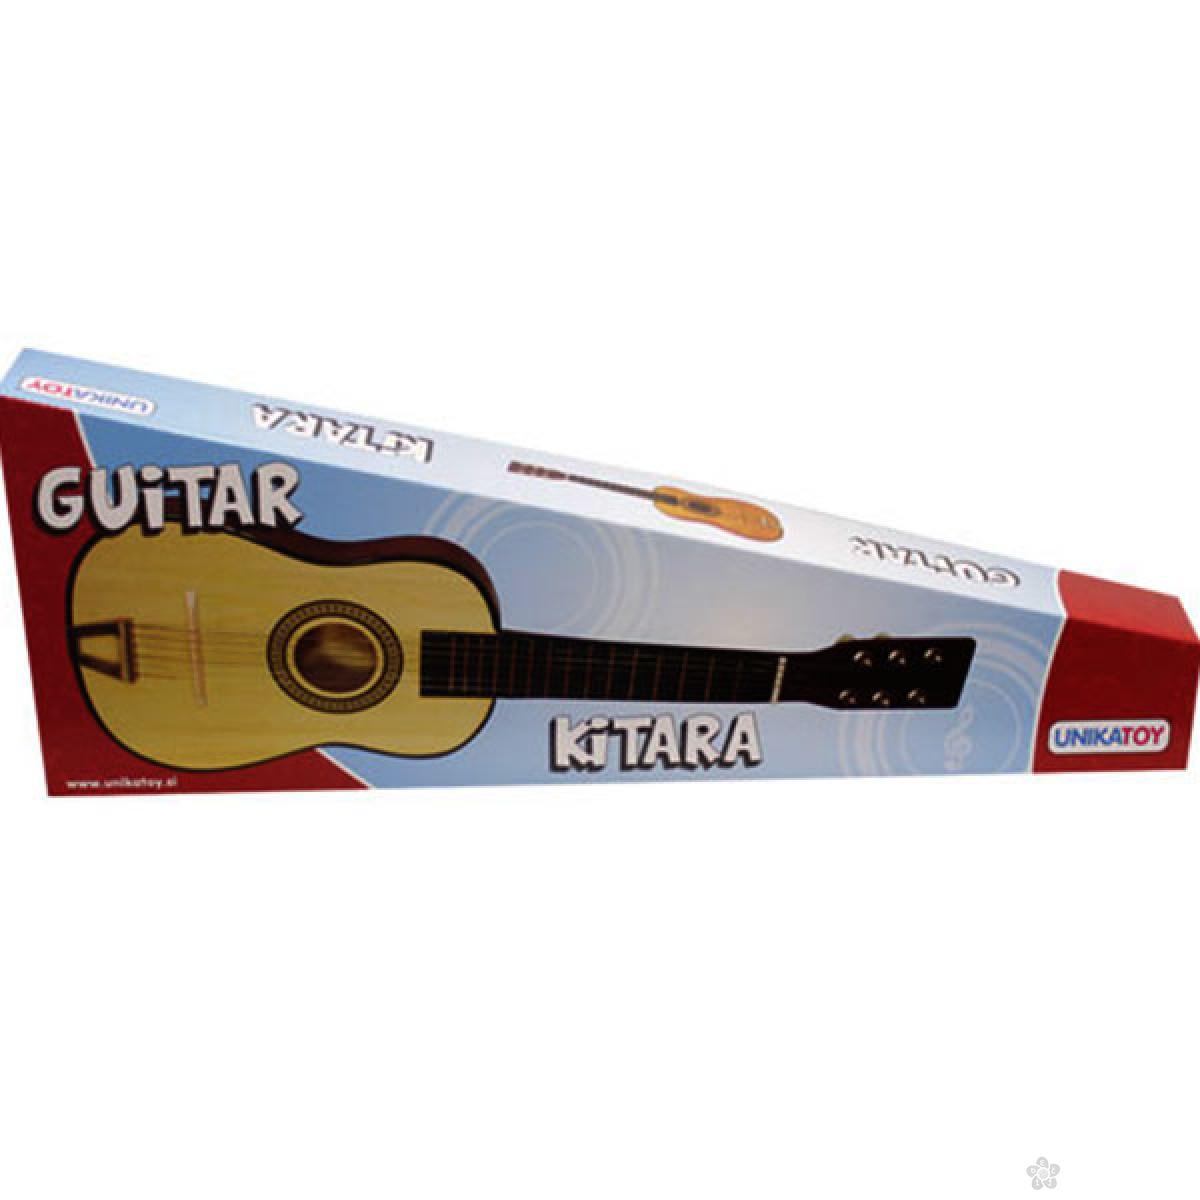 Gitara drvena mala 60 cm U22289 